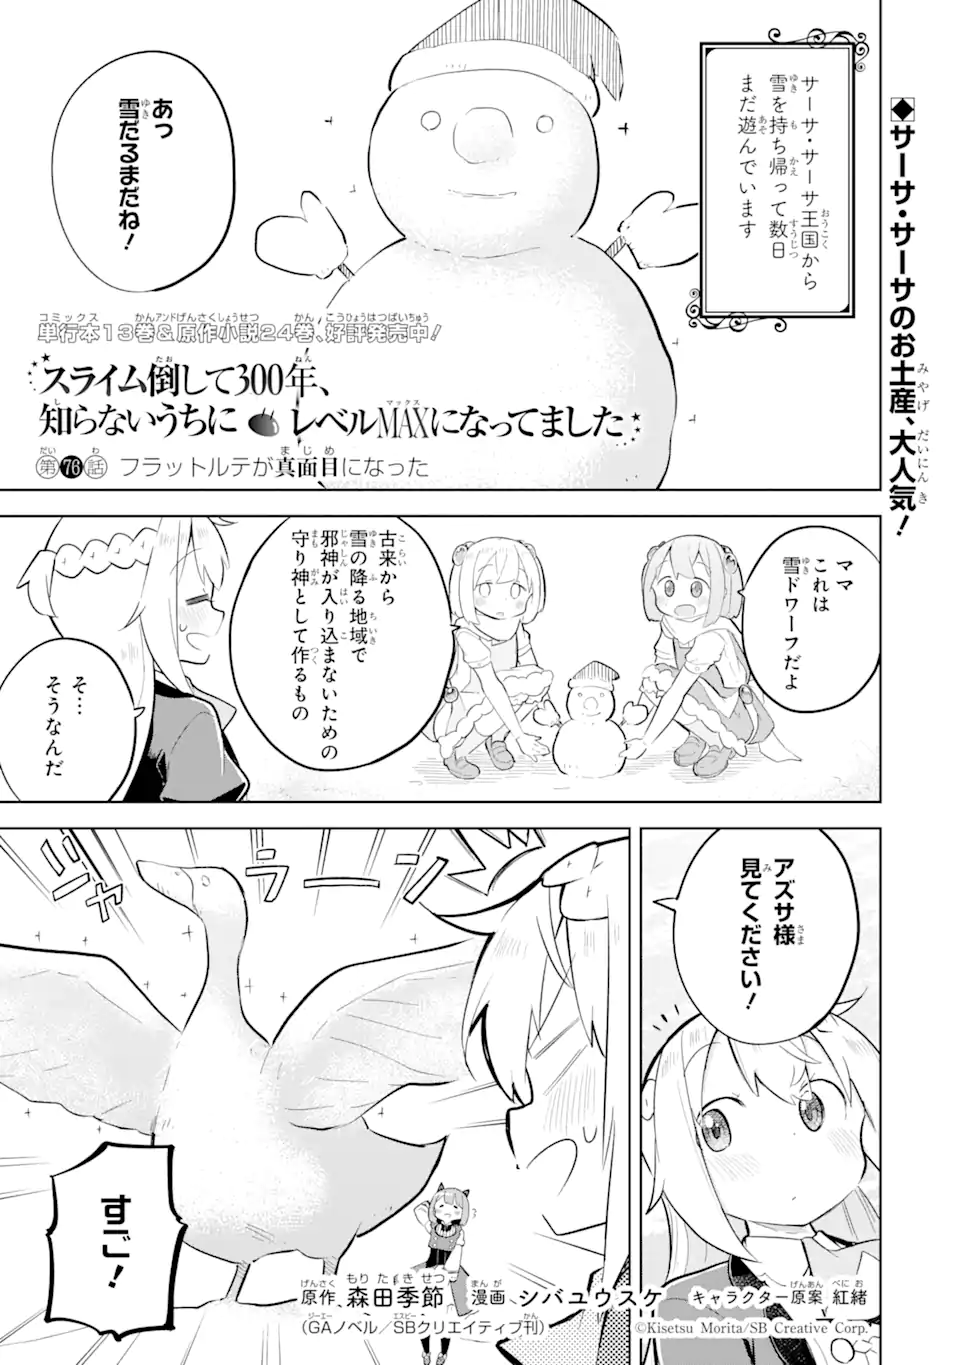 Slime Taoshite 300-nen, Shiranai Uchi ni Level Max ni Nattemashita - Chapter 76.1 - Page 1